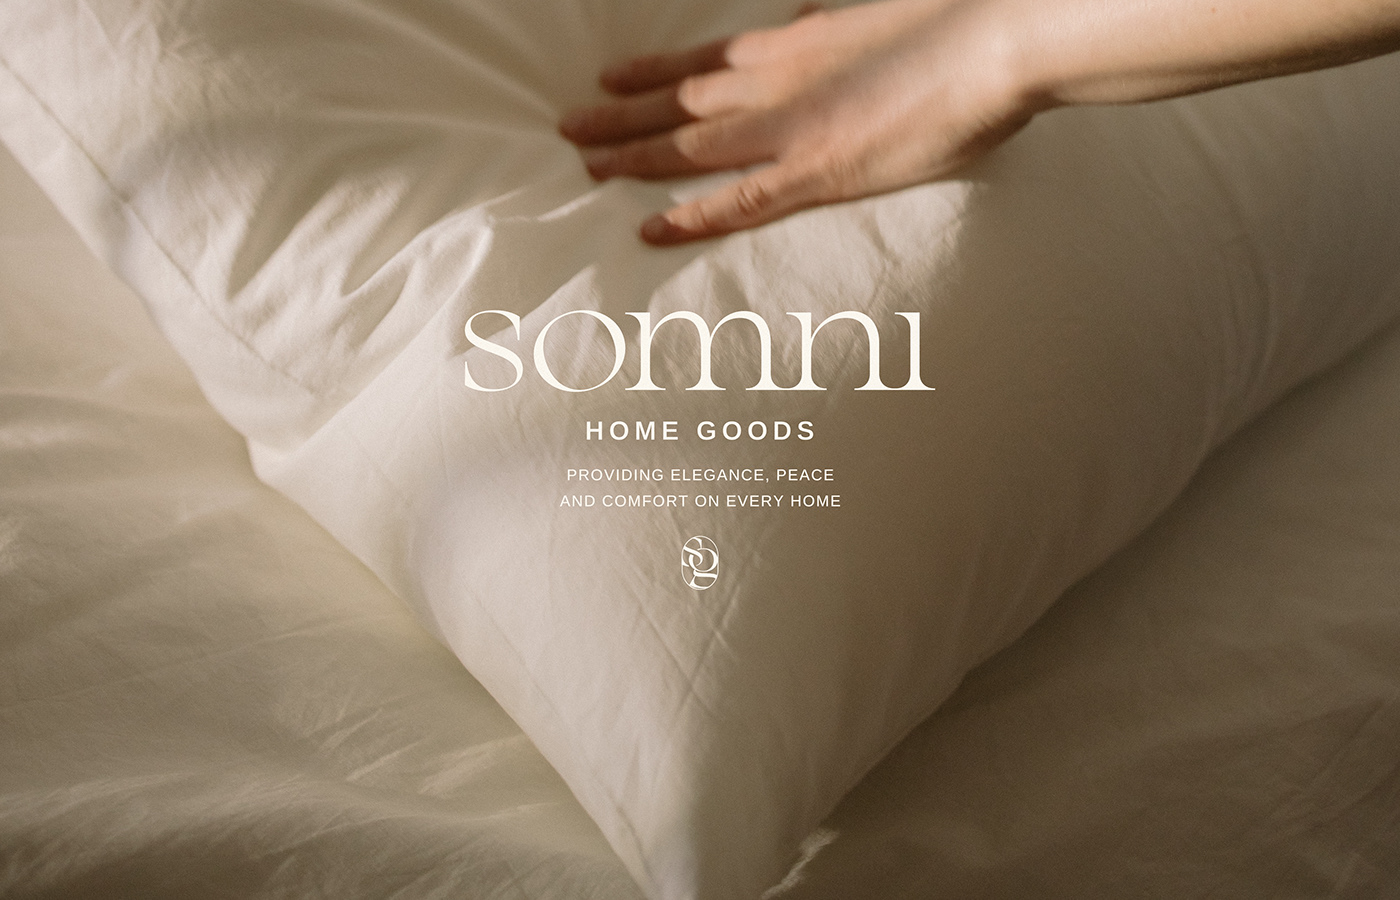 home goods home goods design logo design brand identity Logo Design Logotype visual identity brand logos